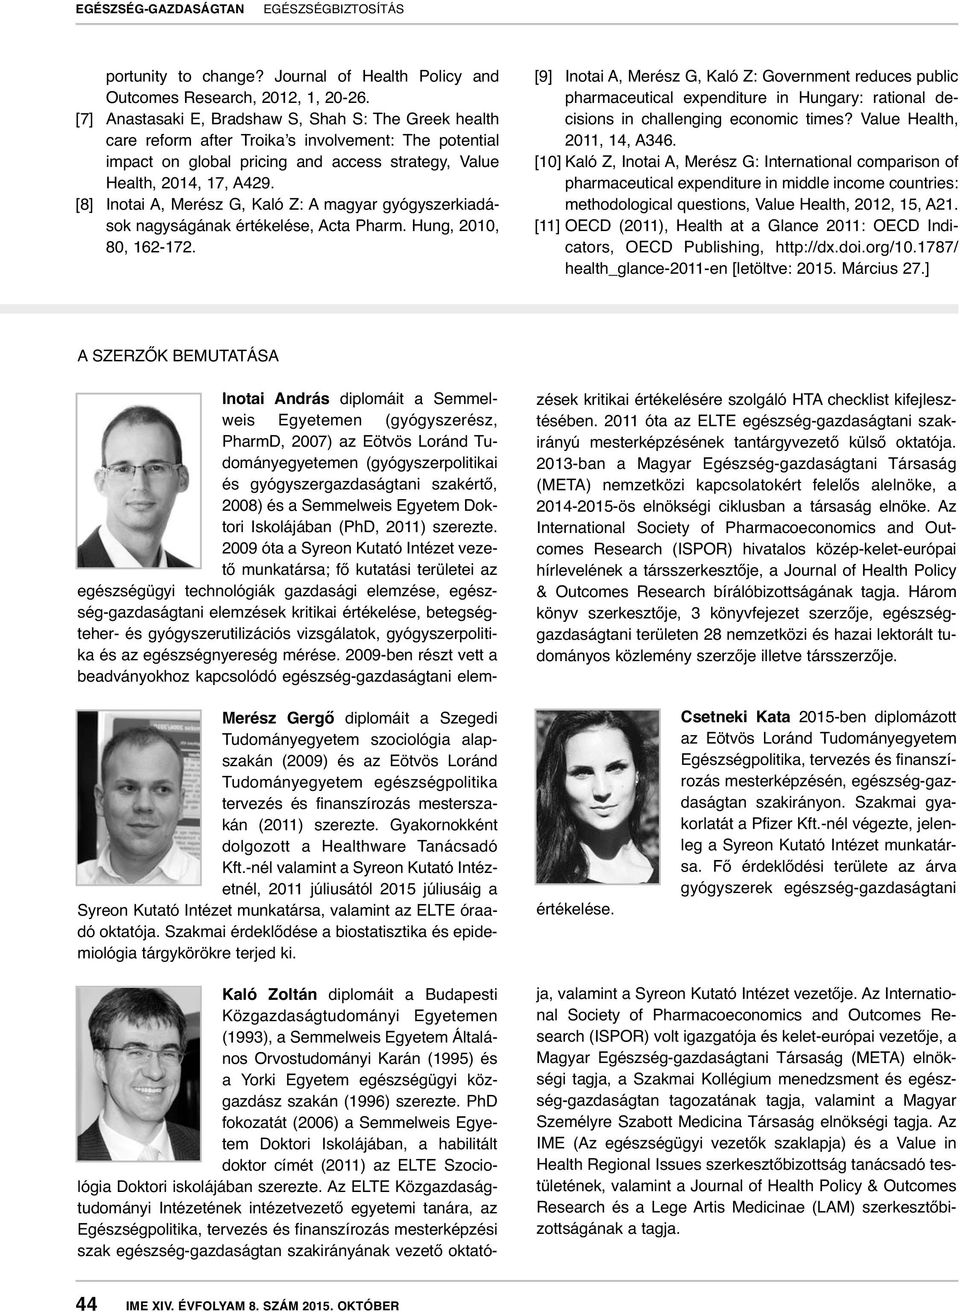 [8] Inotai A, Merész G, Kaló Z: A magyar gyógyszerkiadások nagyságának értékelése, Acta Pharm. Hung, 2010, 80, 162-172.